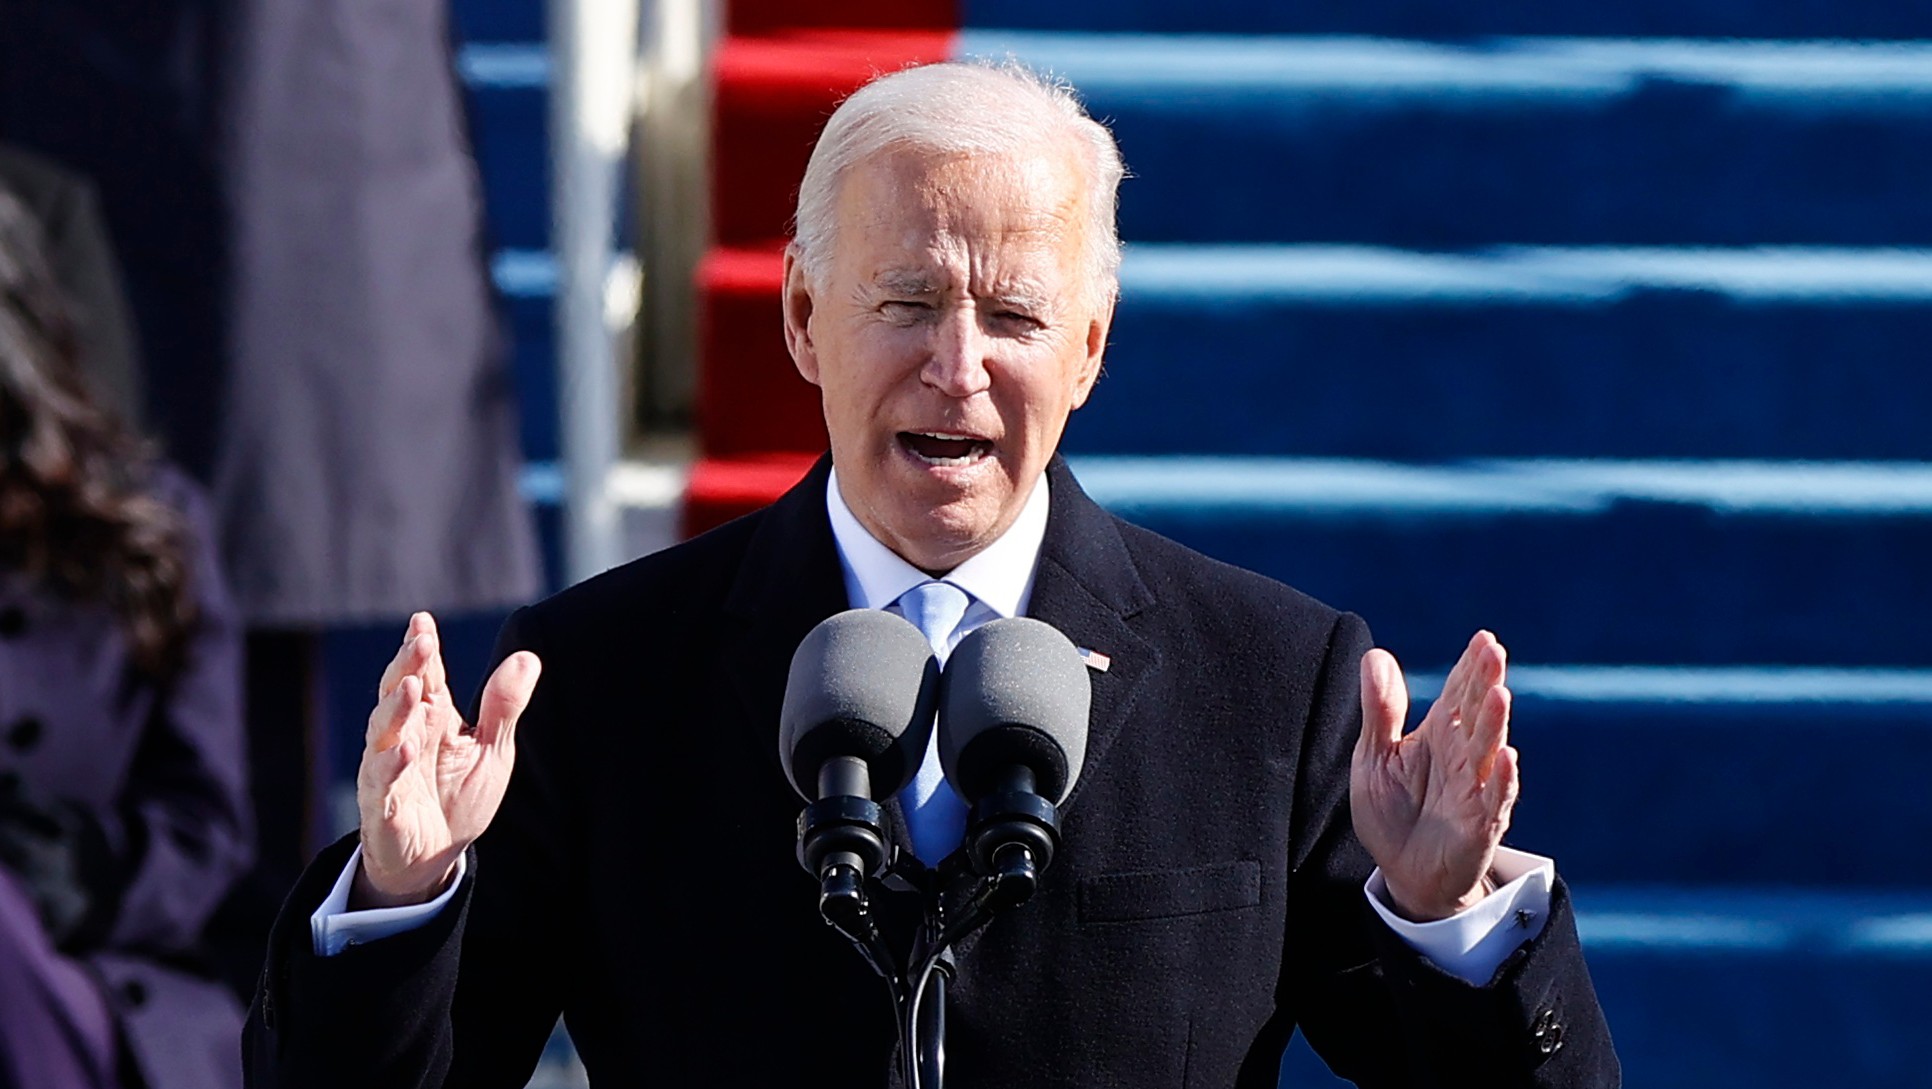 Ceremonia de juramentación de Joe Biden como presidente de Estados Unidos